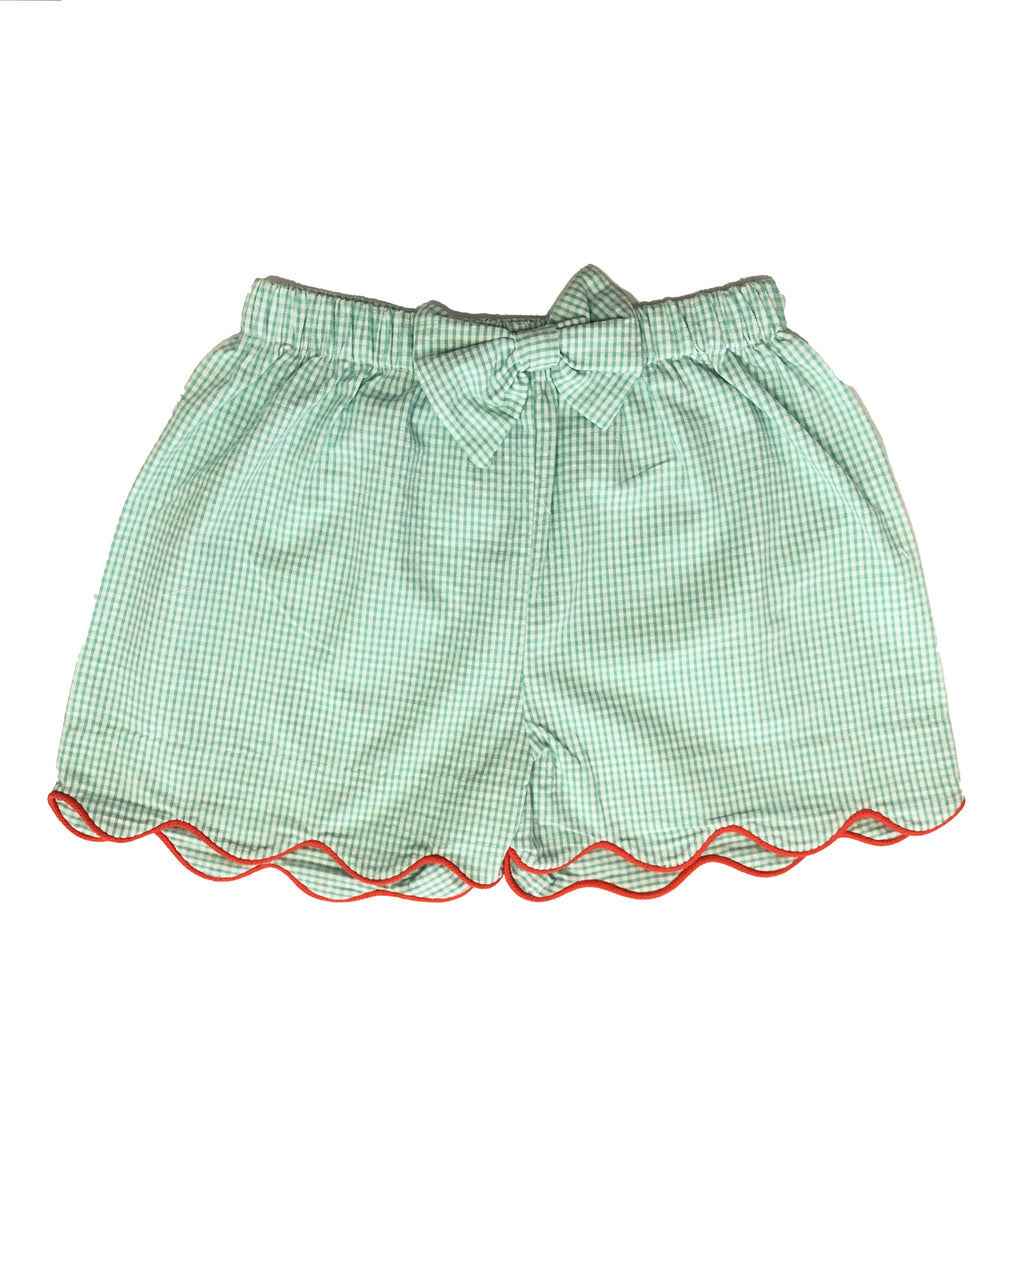 Green Checks Girl's Shorts - Little Threads Inc. Children's Clothing